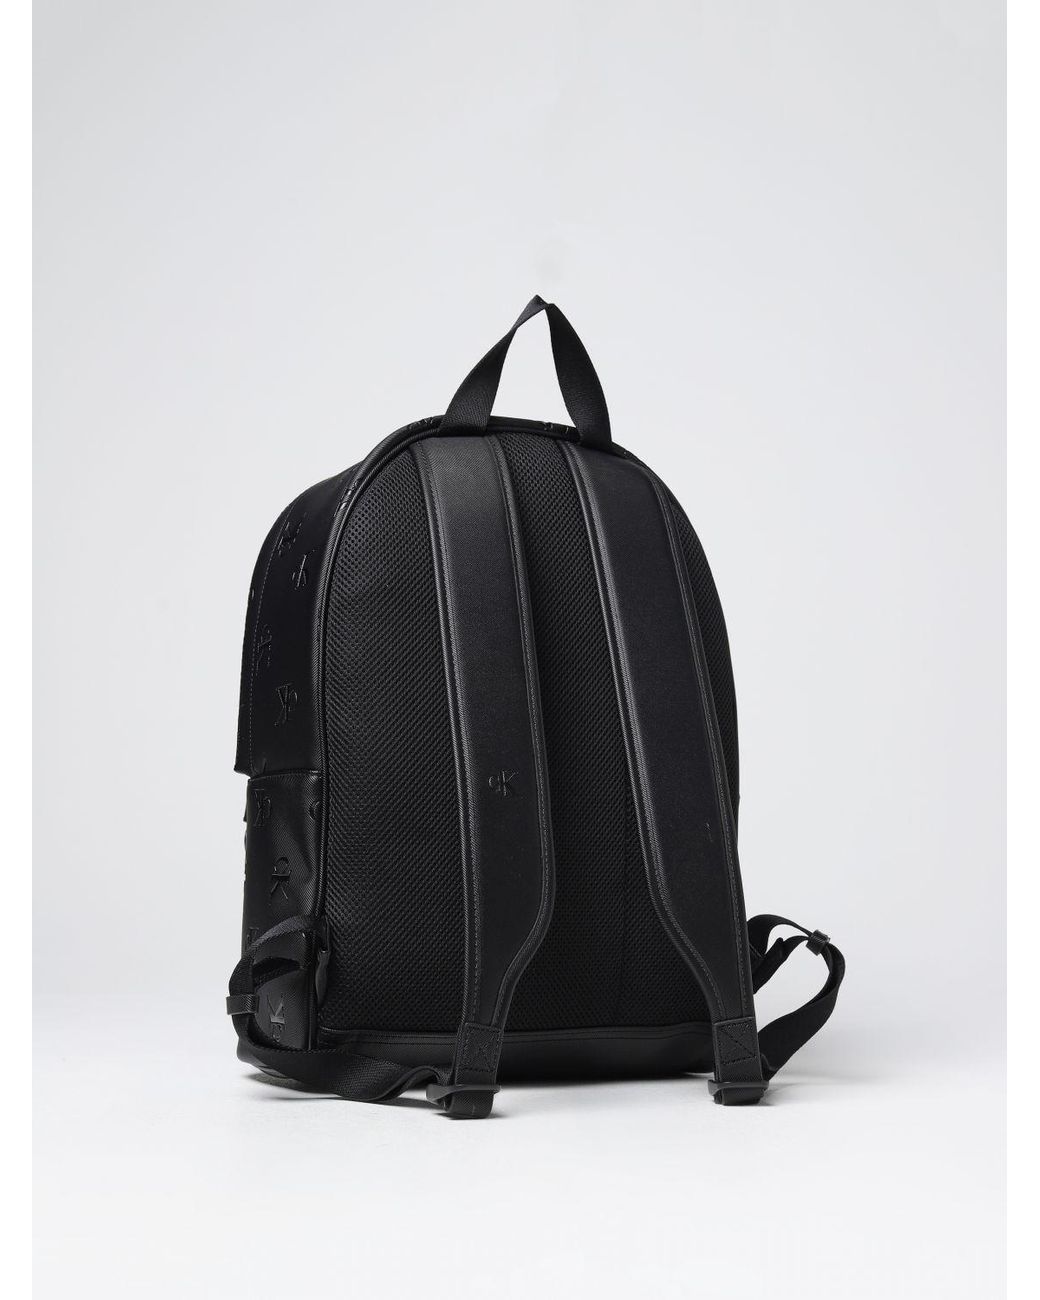 Calvin Klein | Bags | Calvin Klein Zipper Ck Logo Black White Gold Hardware  Lightweight Backpack | Poshmark